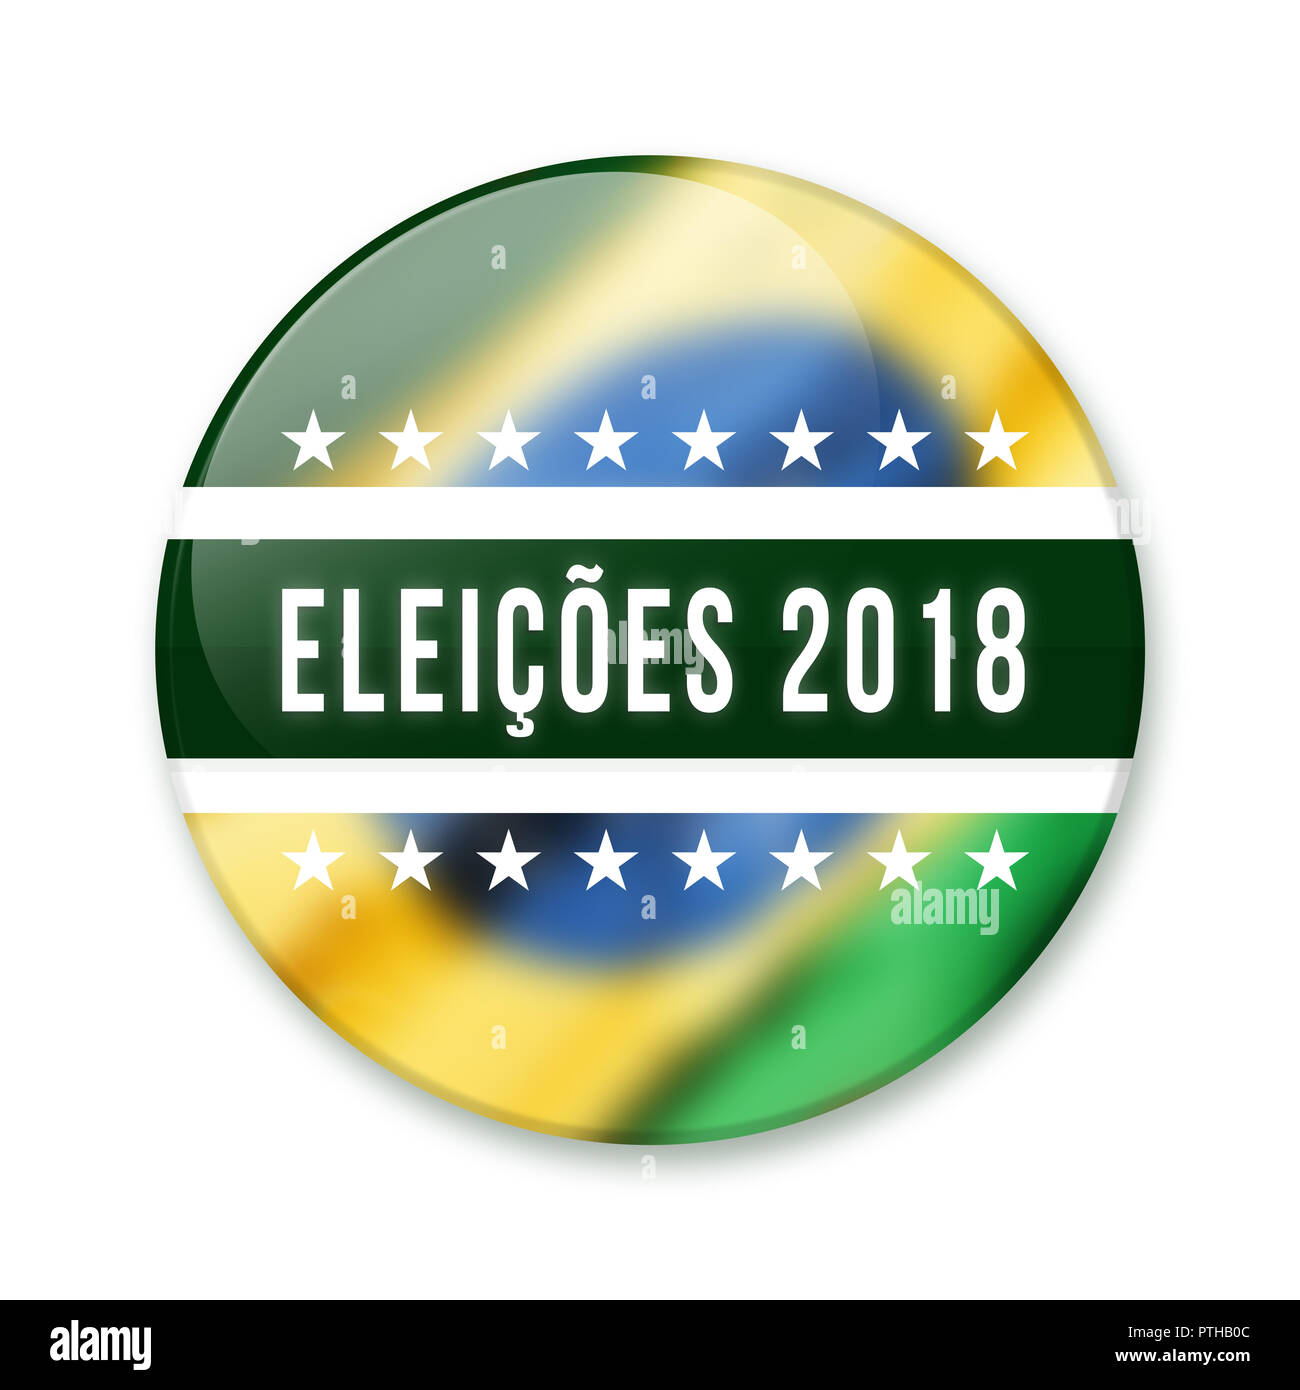 Distintivo per il brasiliano elezioni del 2018. Badge arrotondati scritto Eleicoes 2018 con la bandiera brasiliana tema sfocati sullo sfondo. Foto Stock